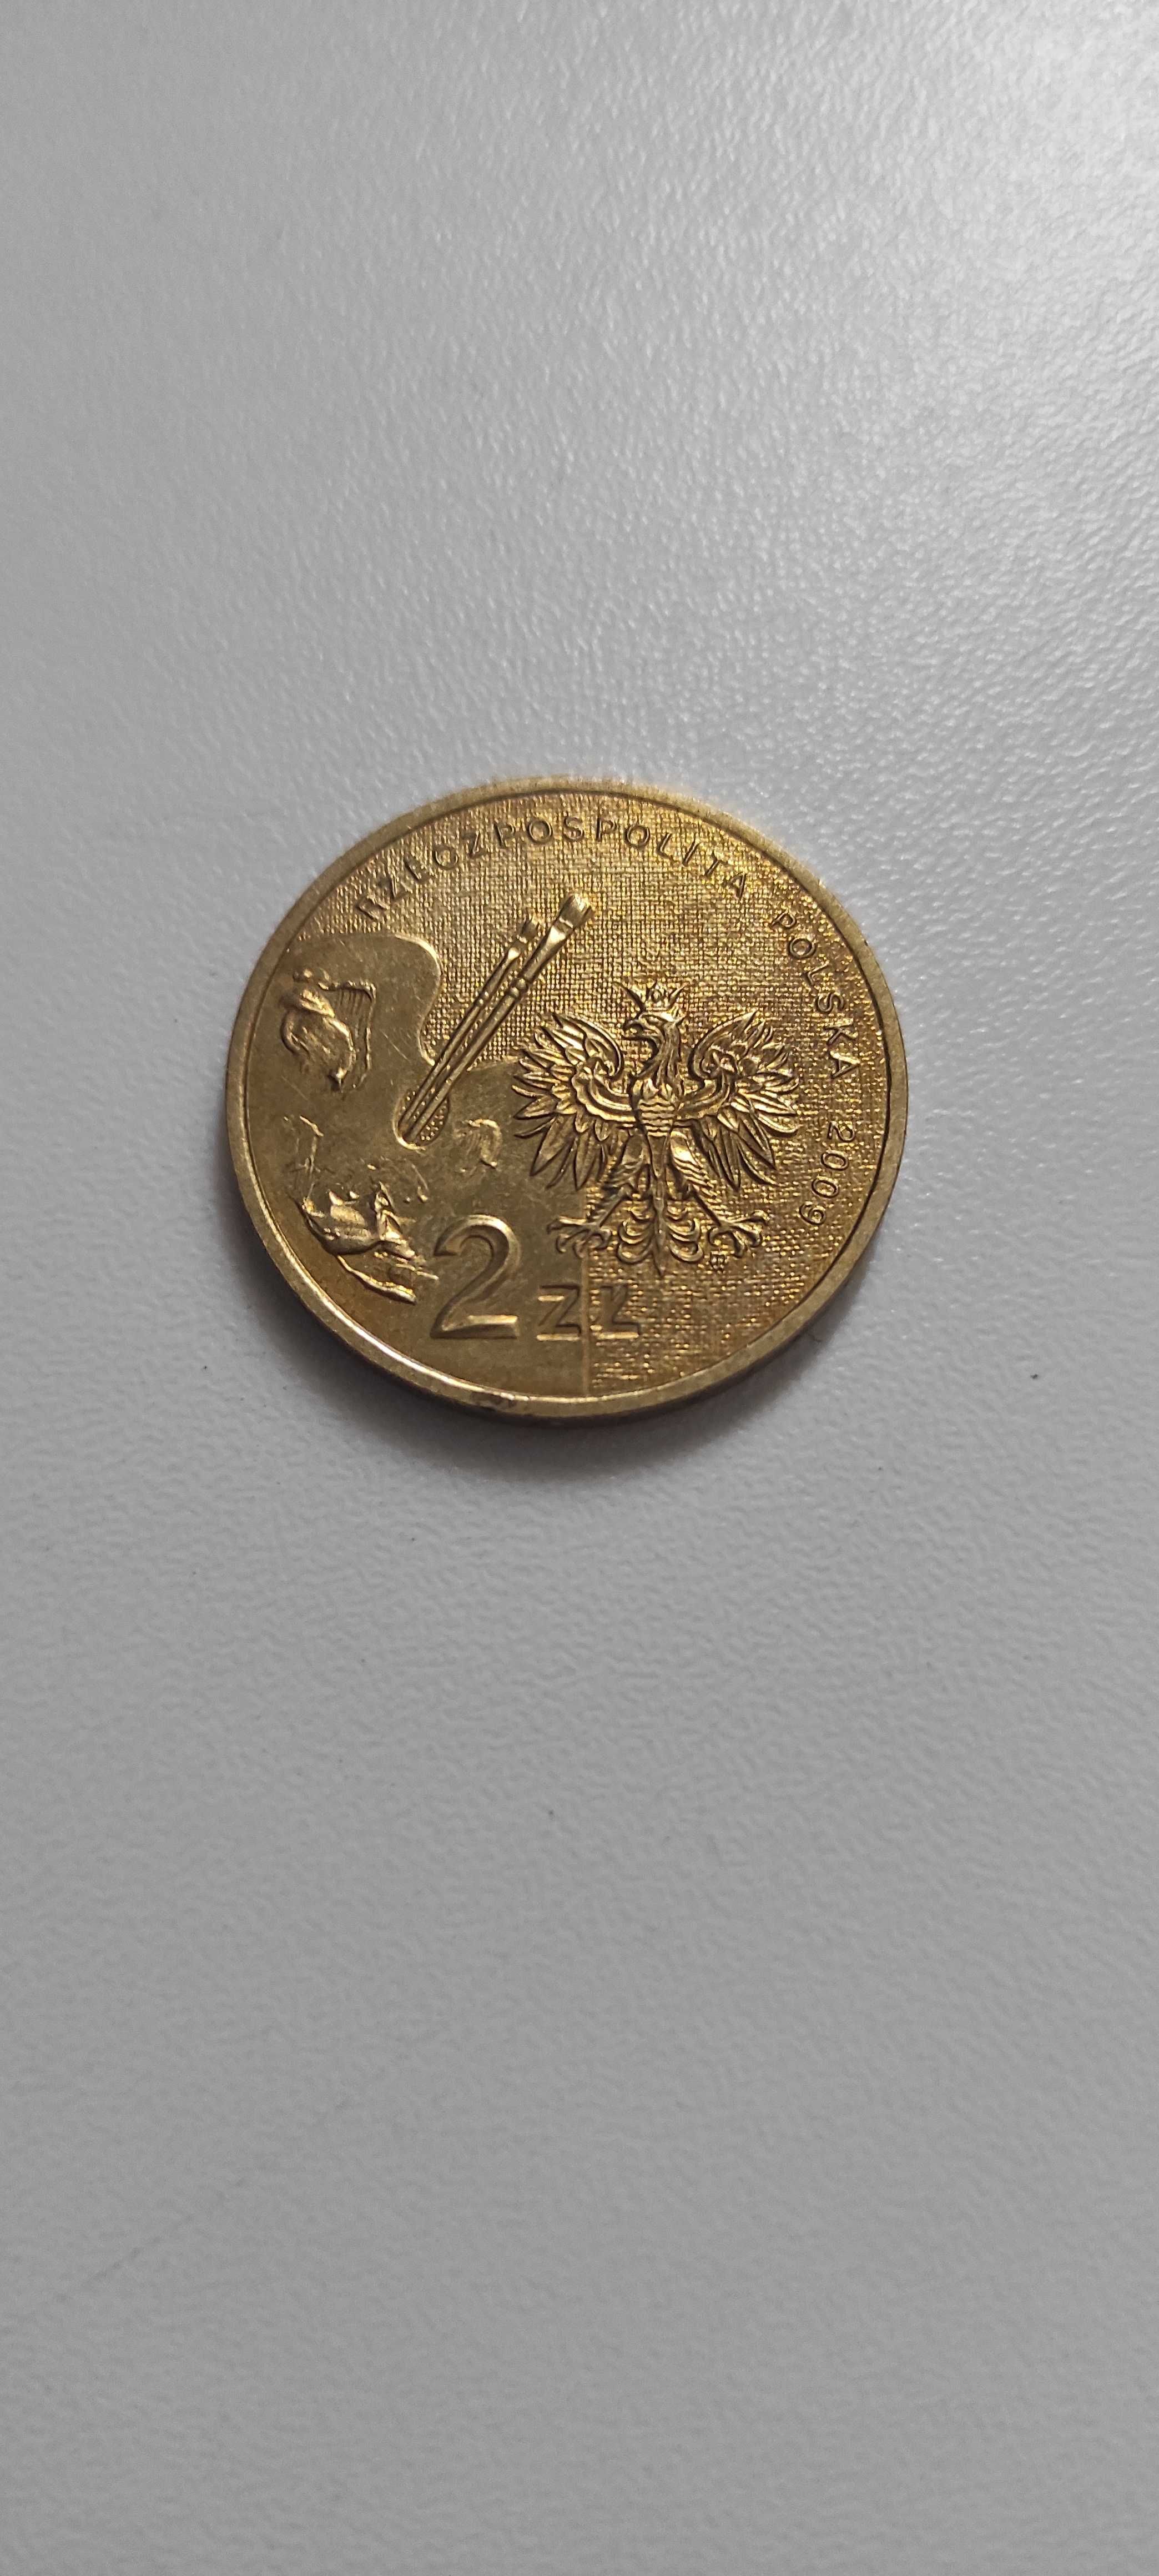 Władysław Strzemiński 2009 moneta